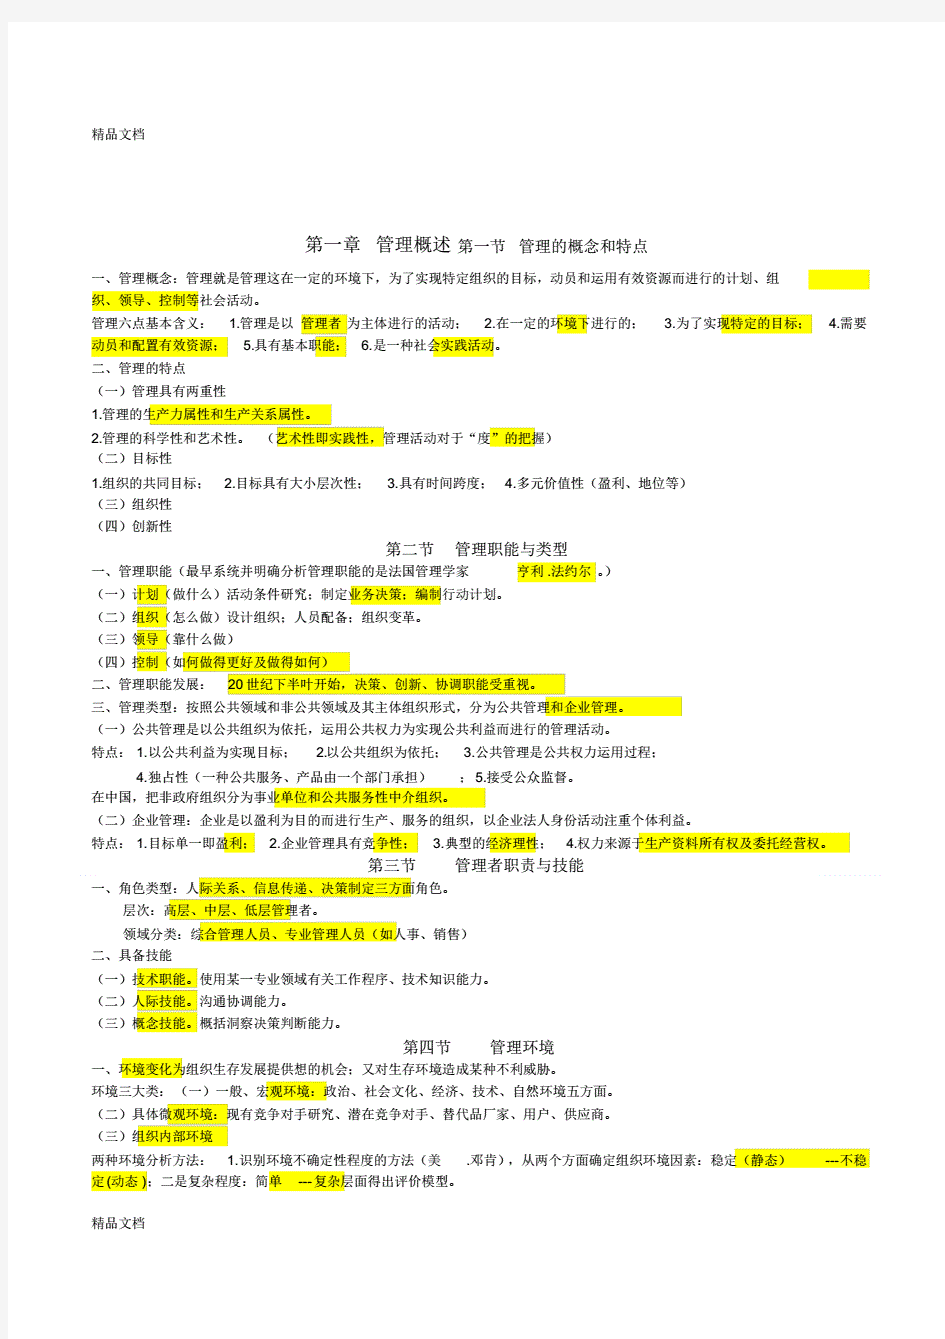 重庆市事业单位管理基础知识(全)(汇编)